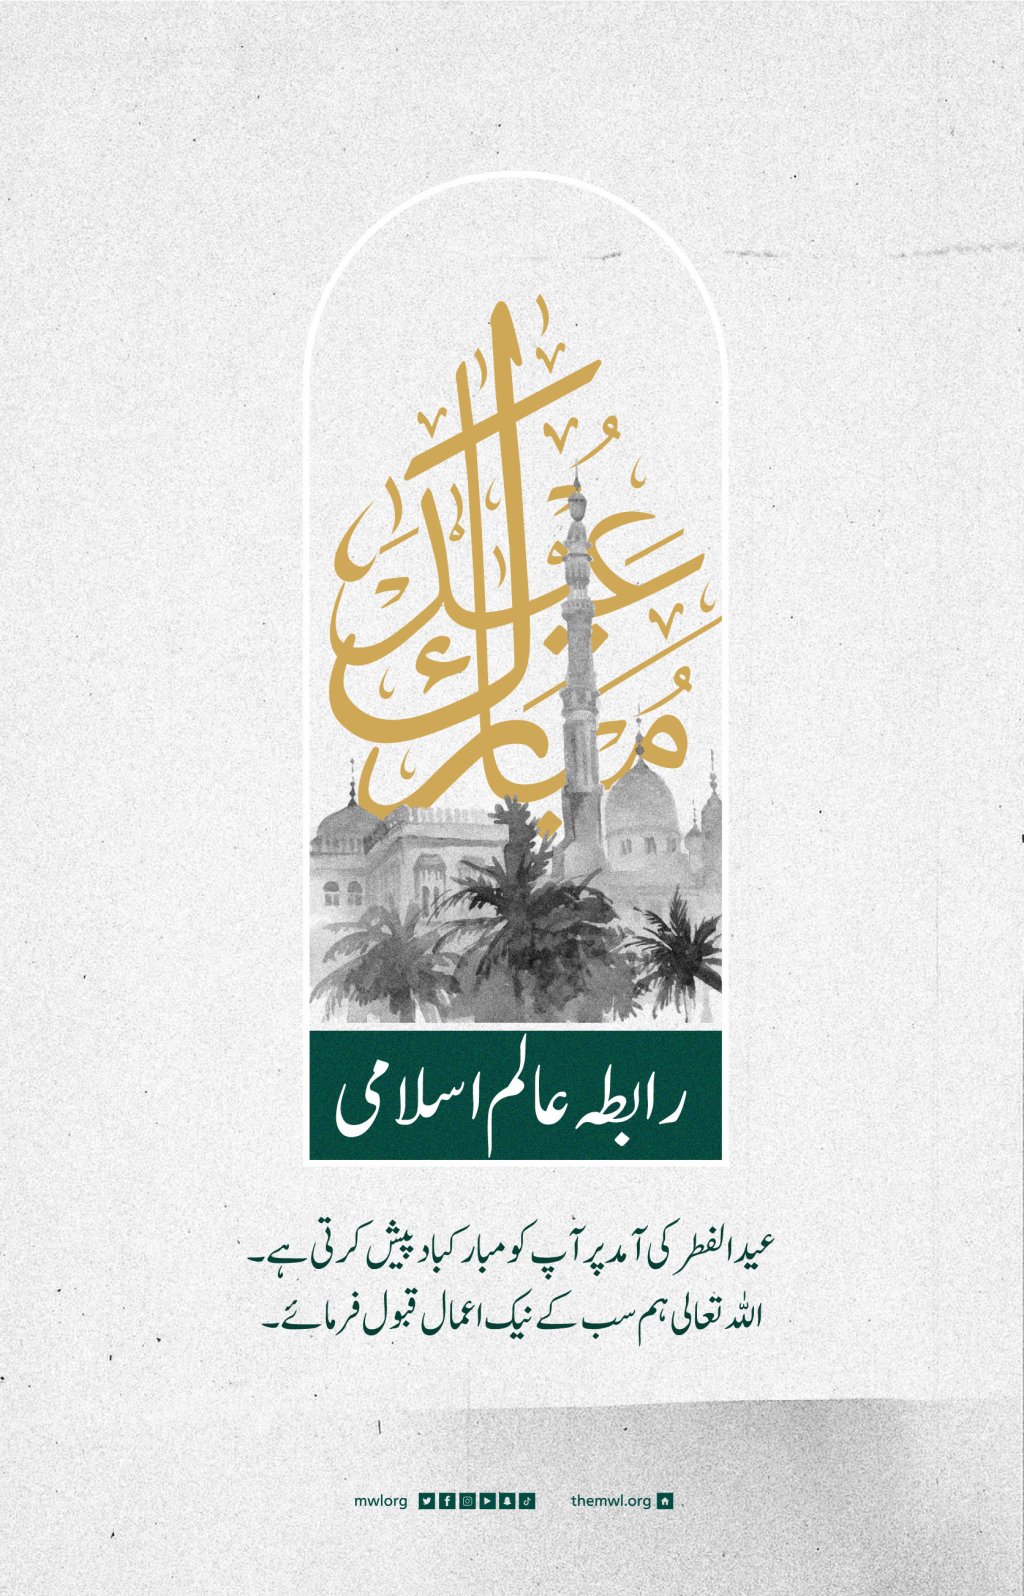 رابطہ عالم اسلامی کی جانب سے تمام عالم اسلام کو عید الفطر کی آمد کے موقع پر عید مبارک قبول ہو۔